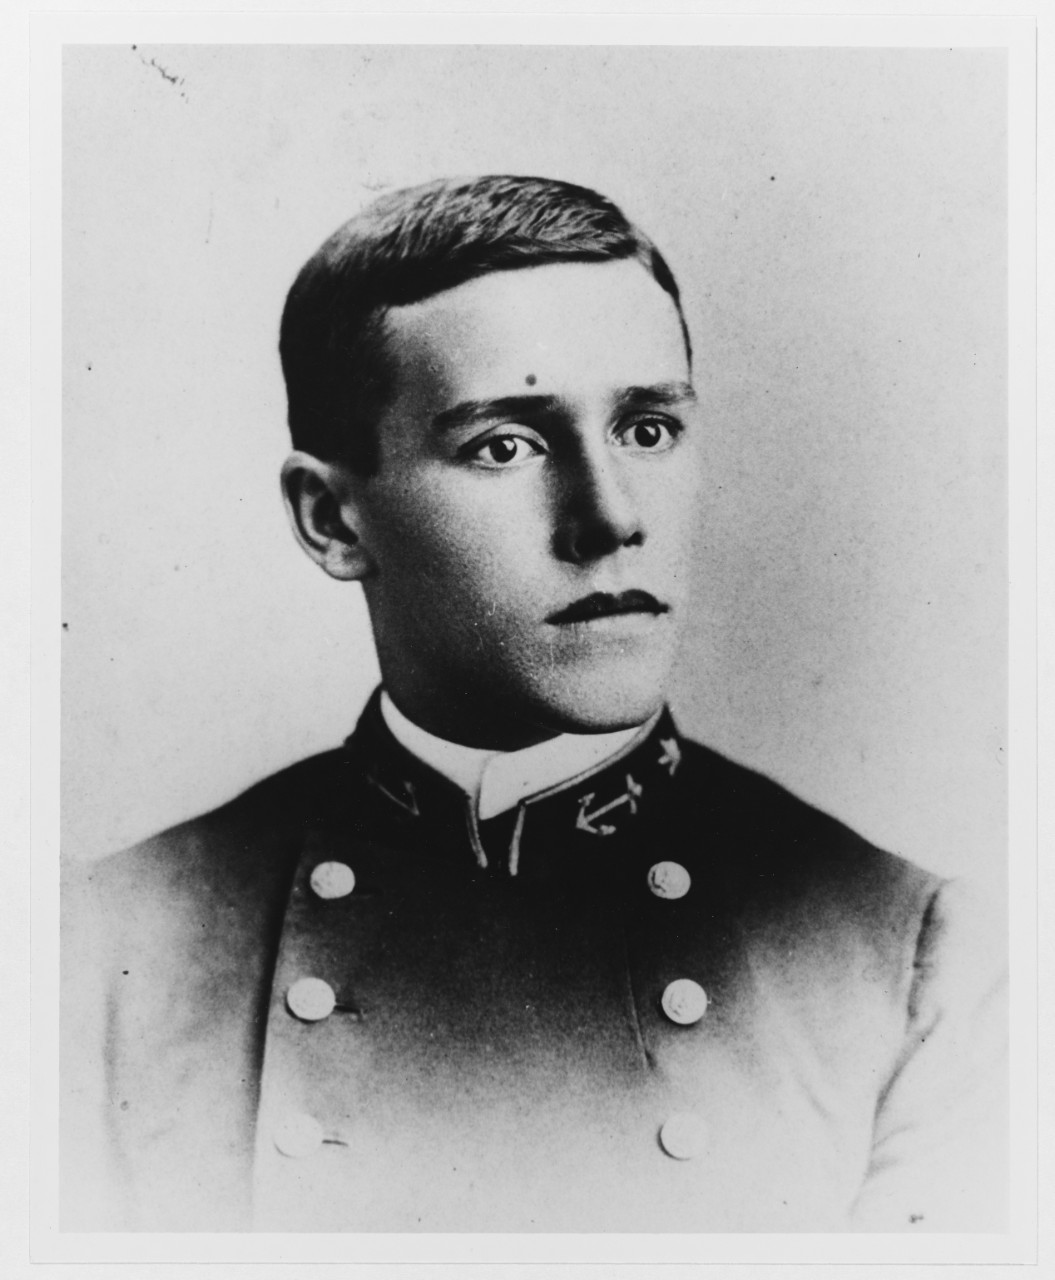 Midshipman William V. Pratt, USN